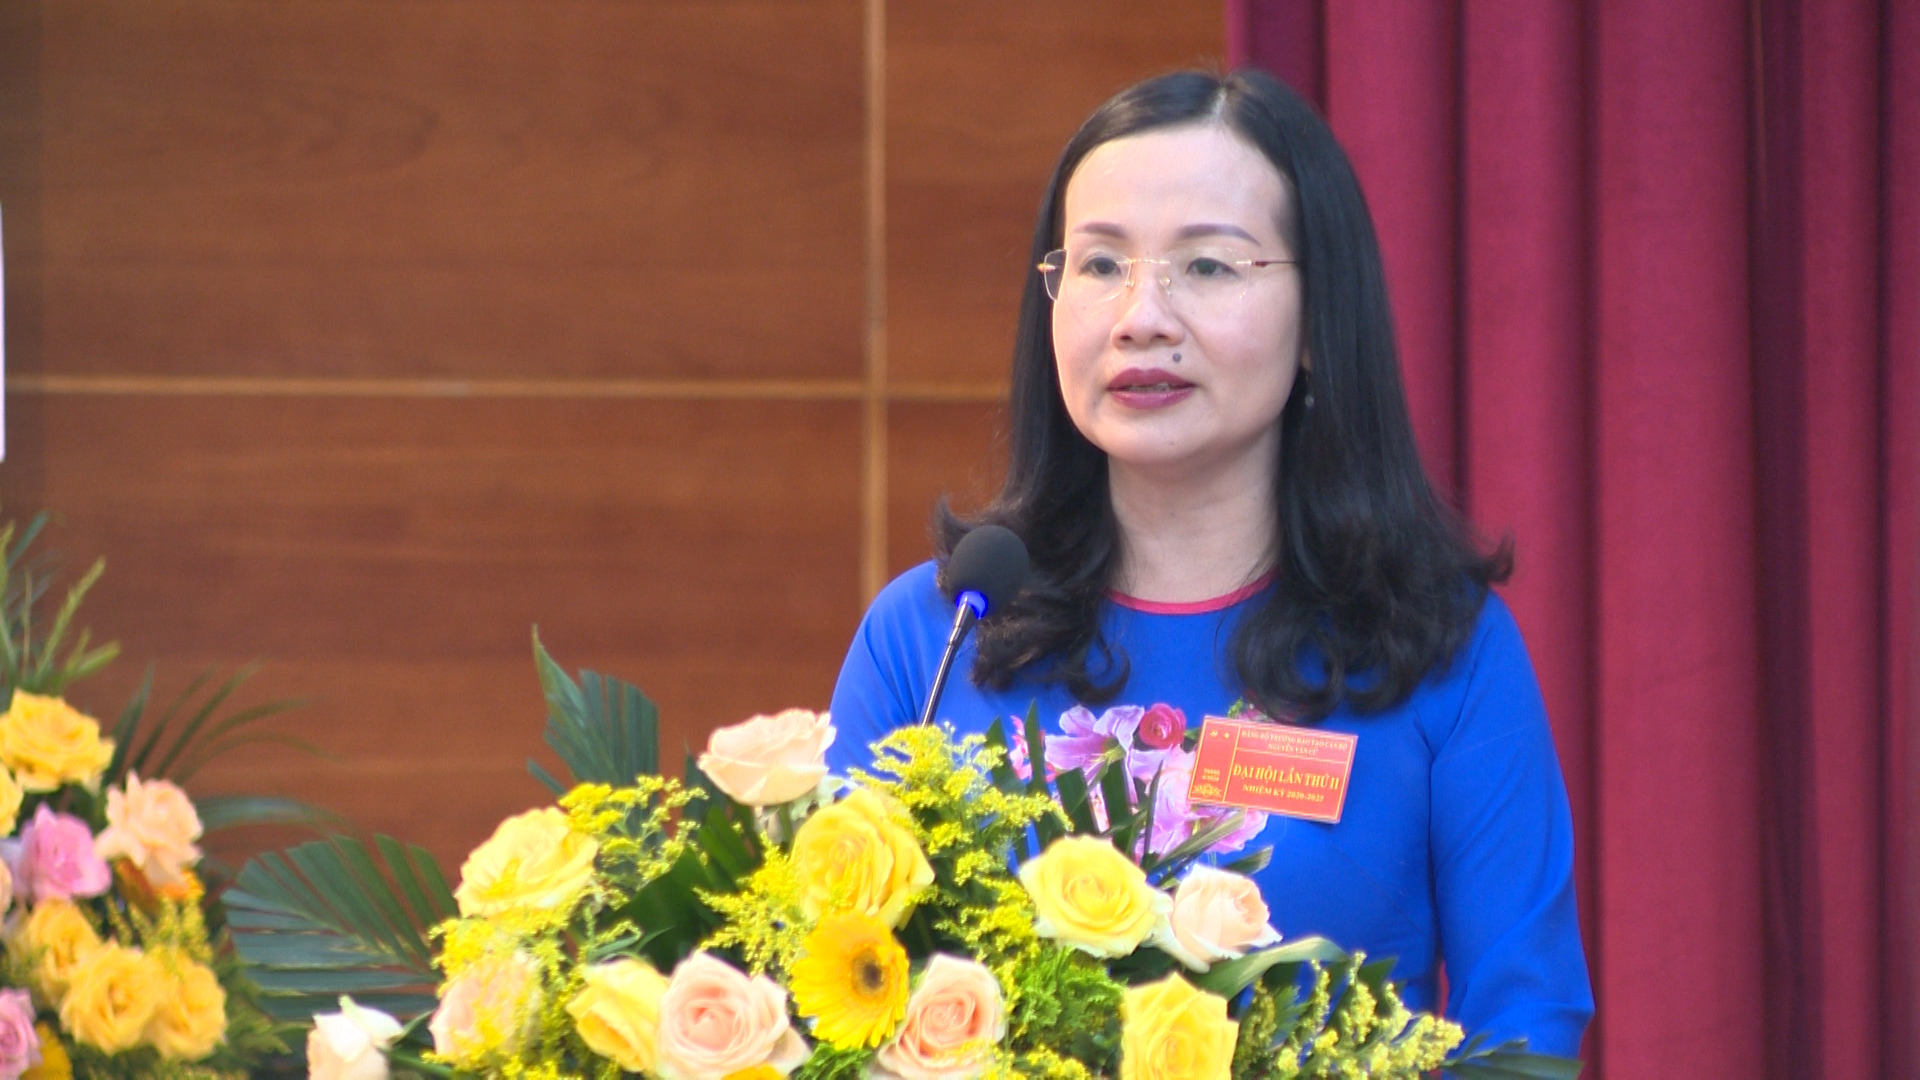 Đồng chí Bùi Thúy Phượng, Tỉnh ủy viên, Hiệu trưởng Trường đào tạo Nguyễn Văn Cừ phát biểu tại Đại hội